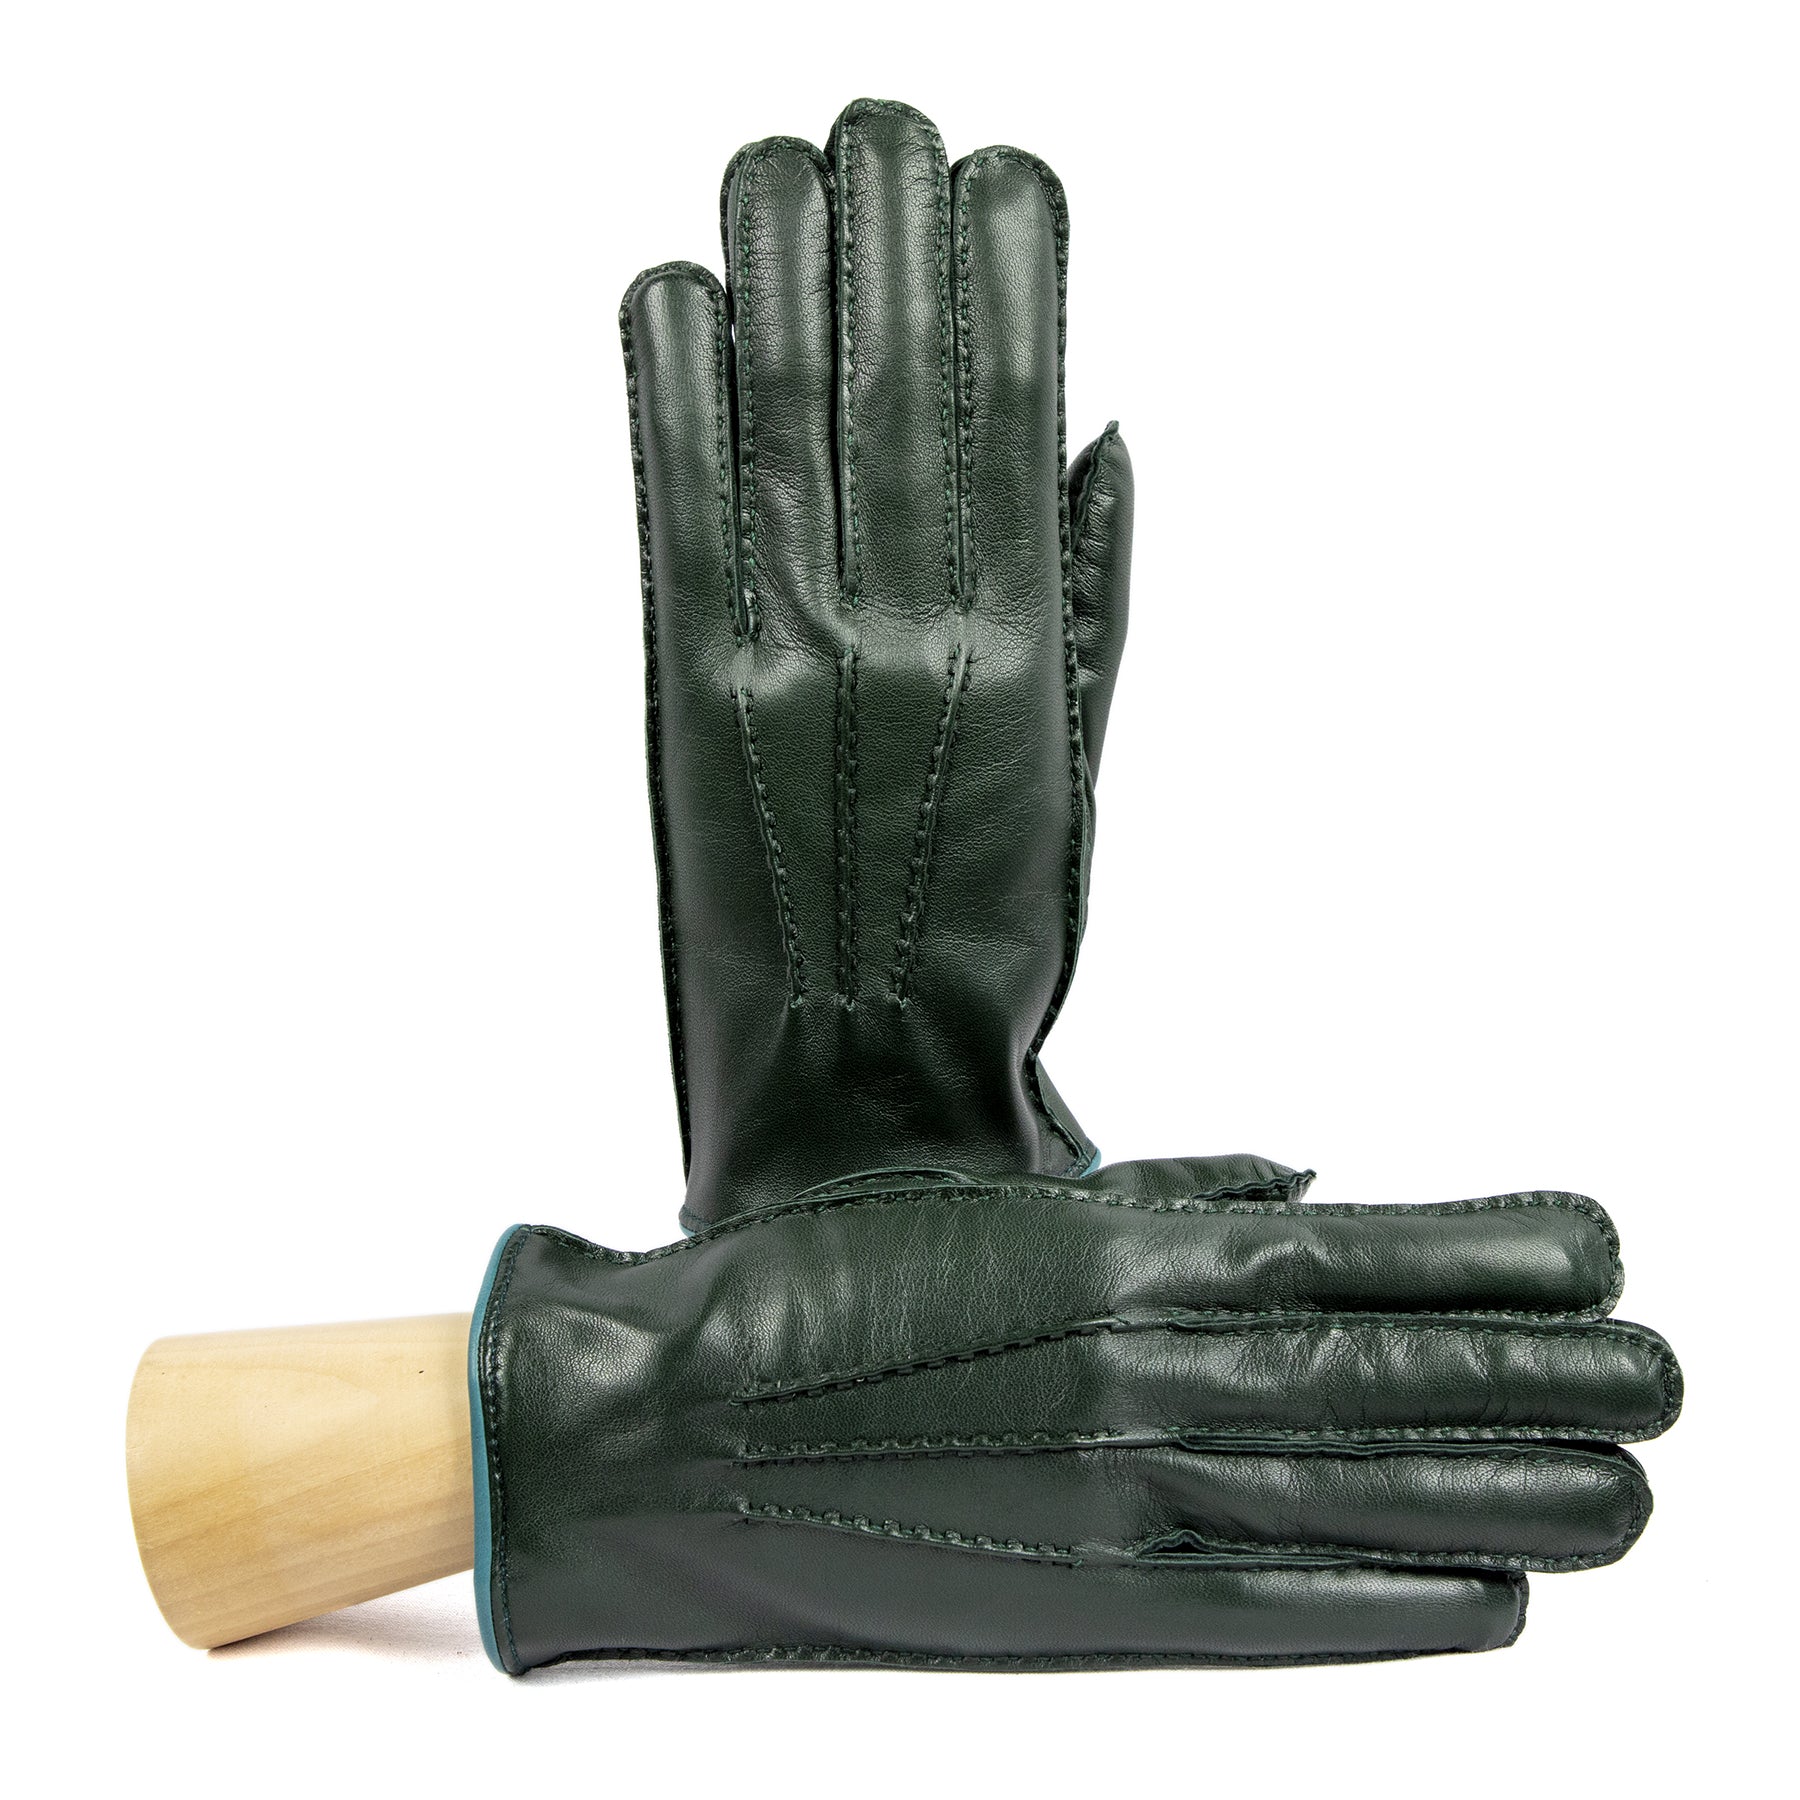 Guanti da uomo in pelle nappa colore verde interamente cuciti a mano e  foderati cashmere - Gala Gloves